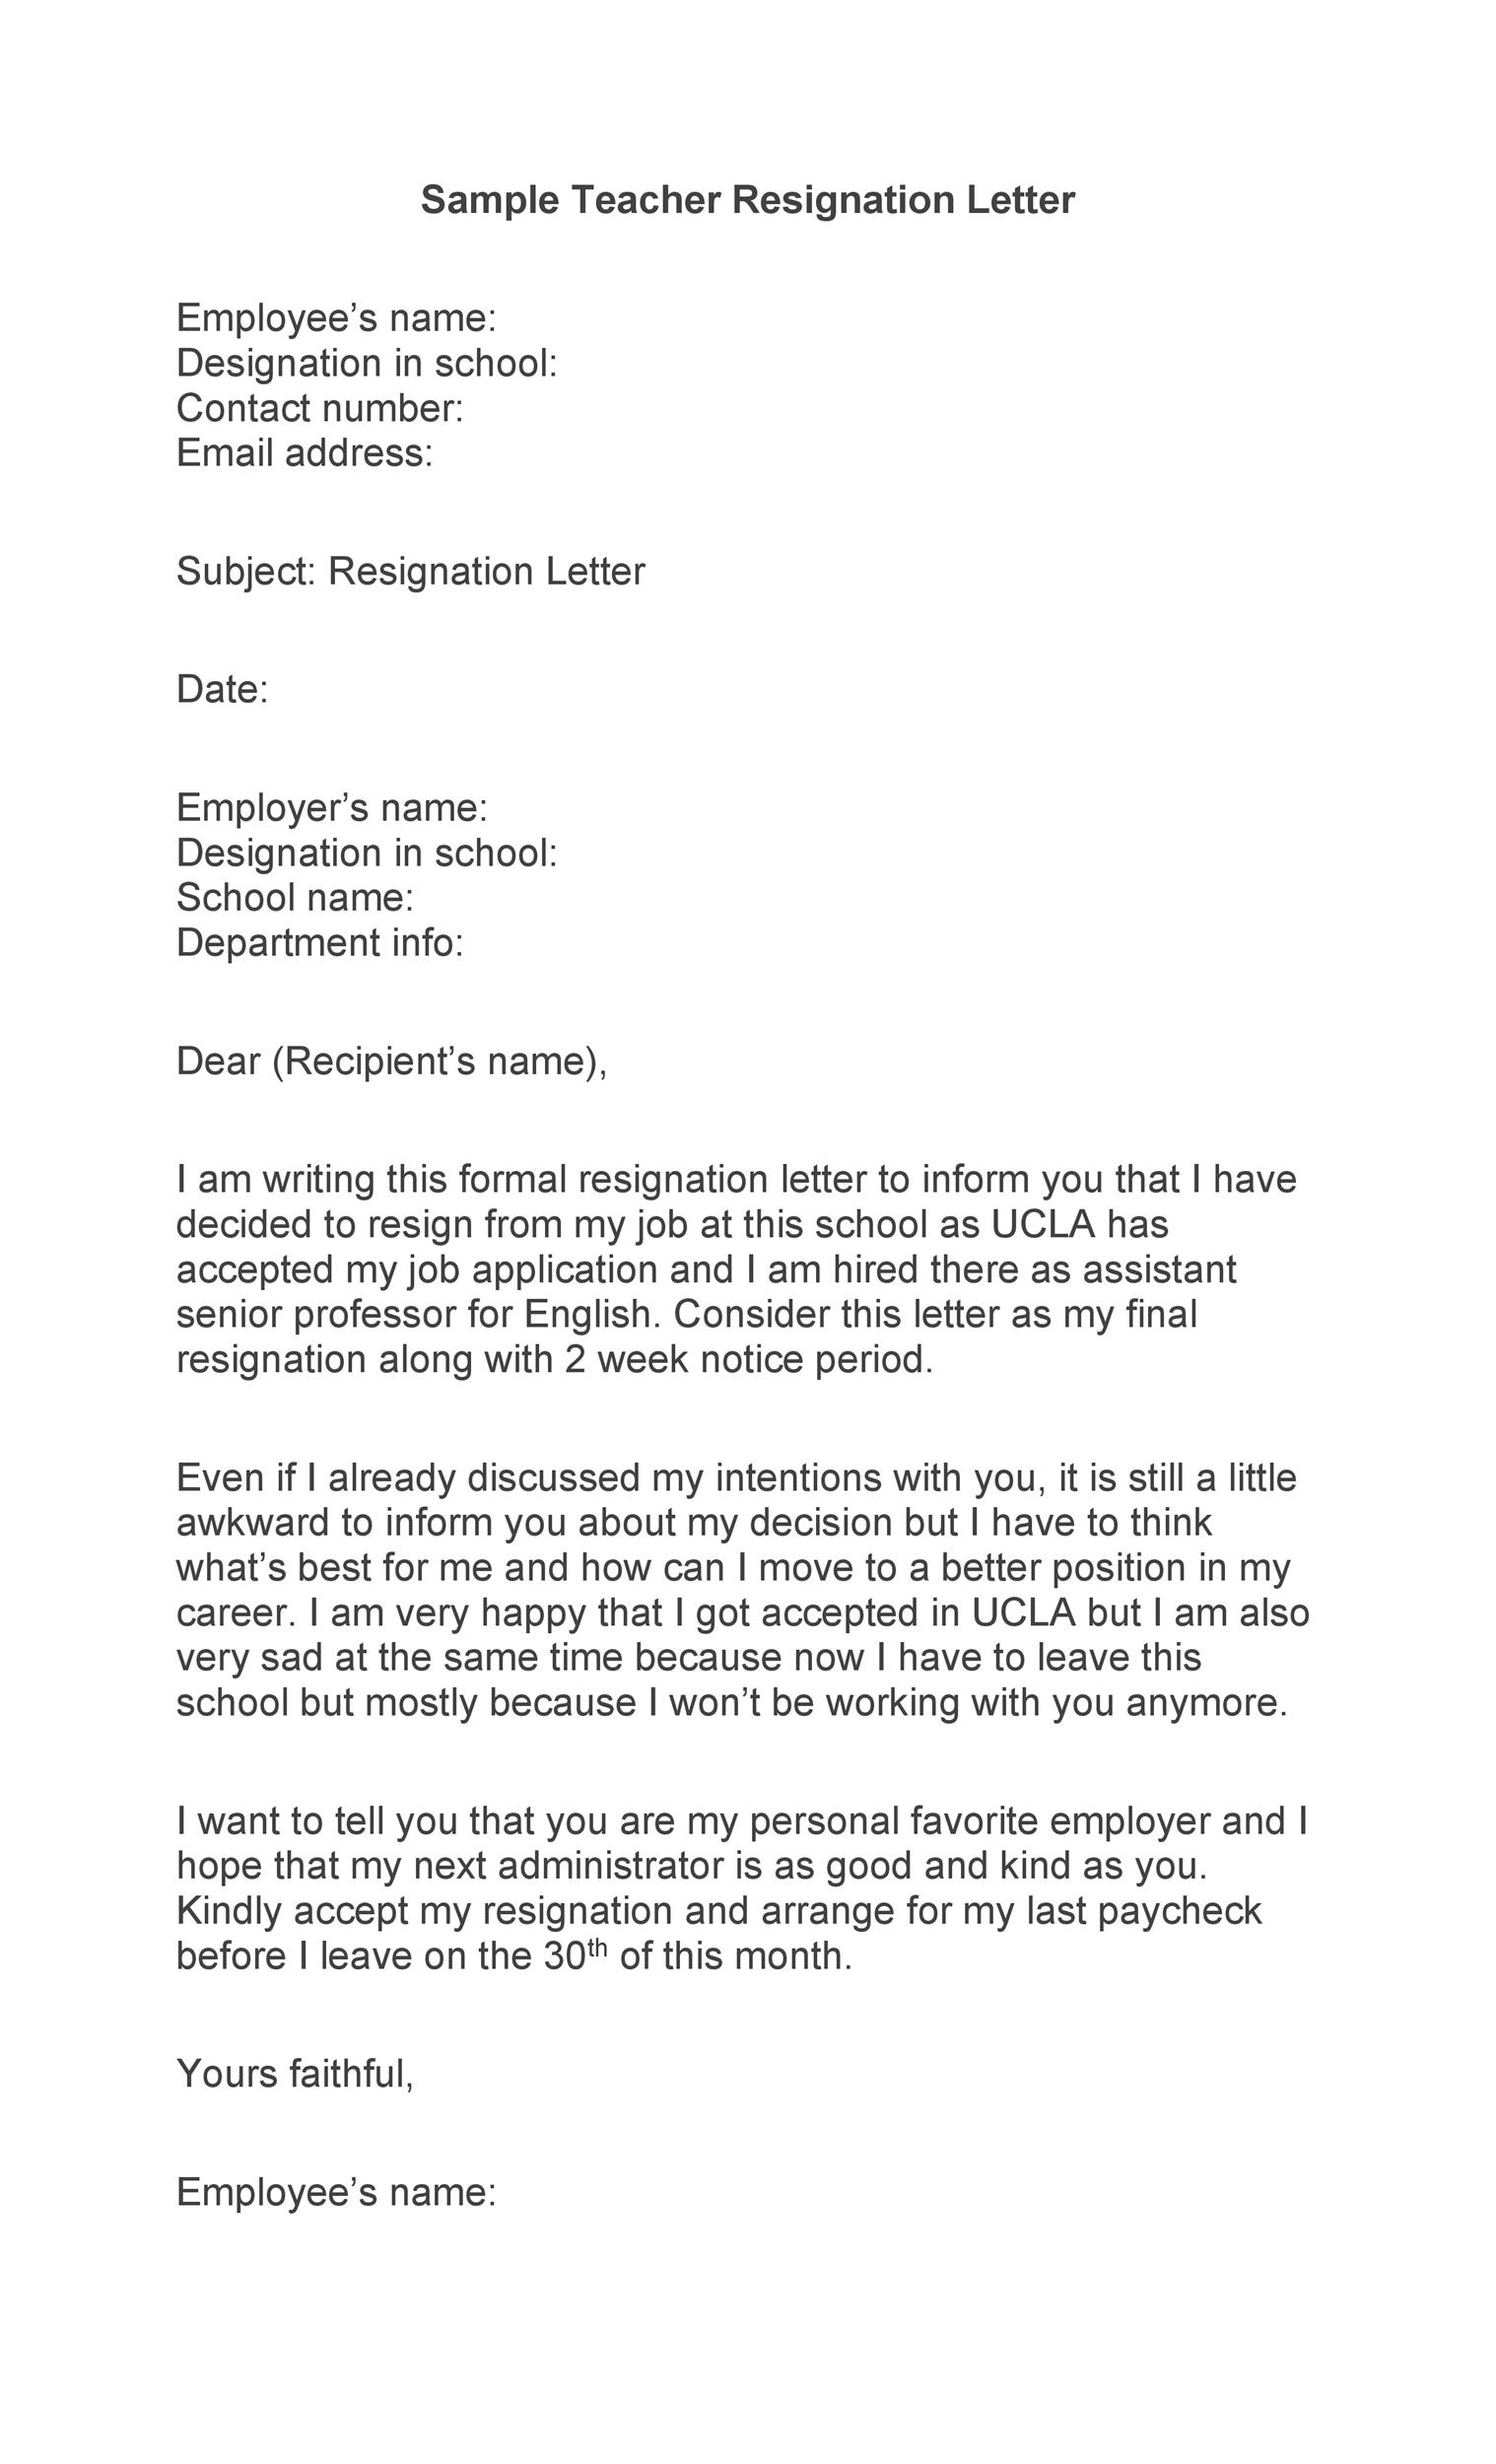 Basic Resignation Letter Samples from templatelab.com